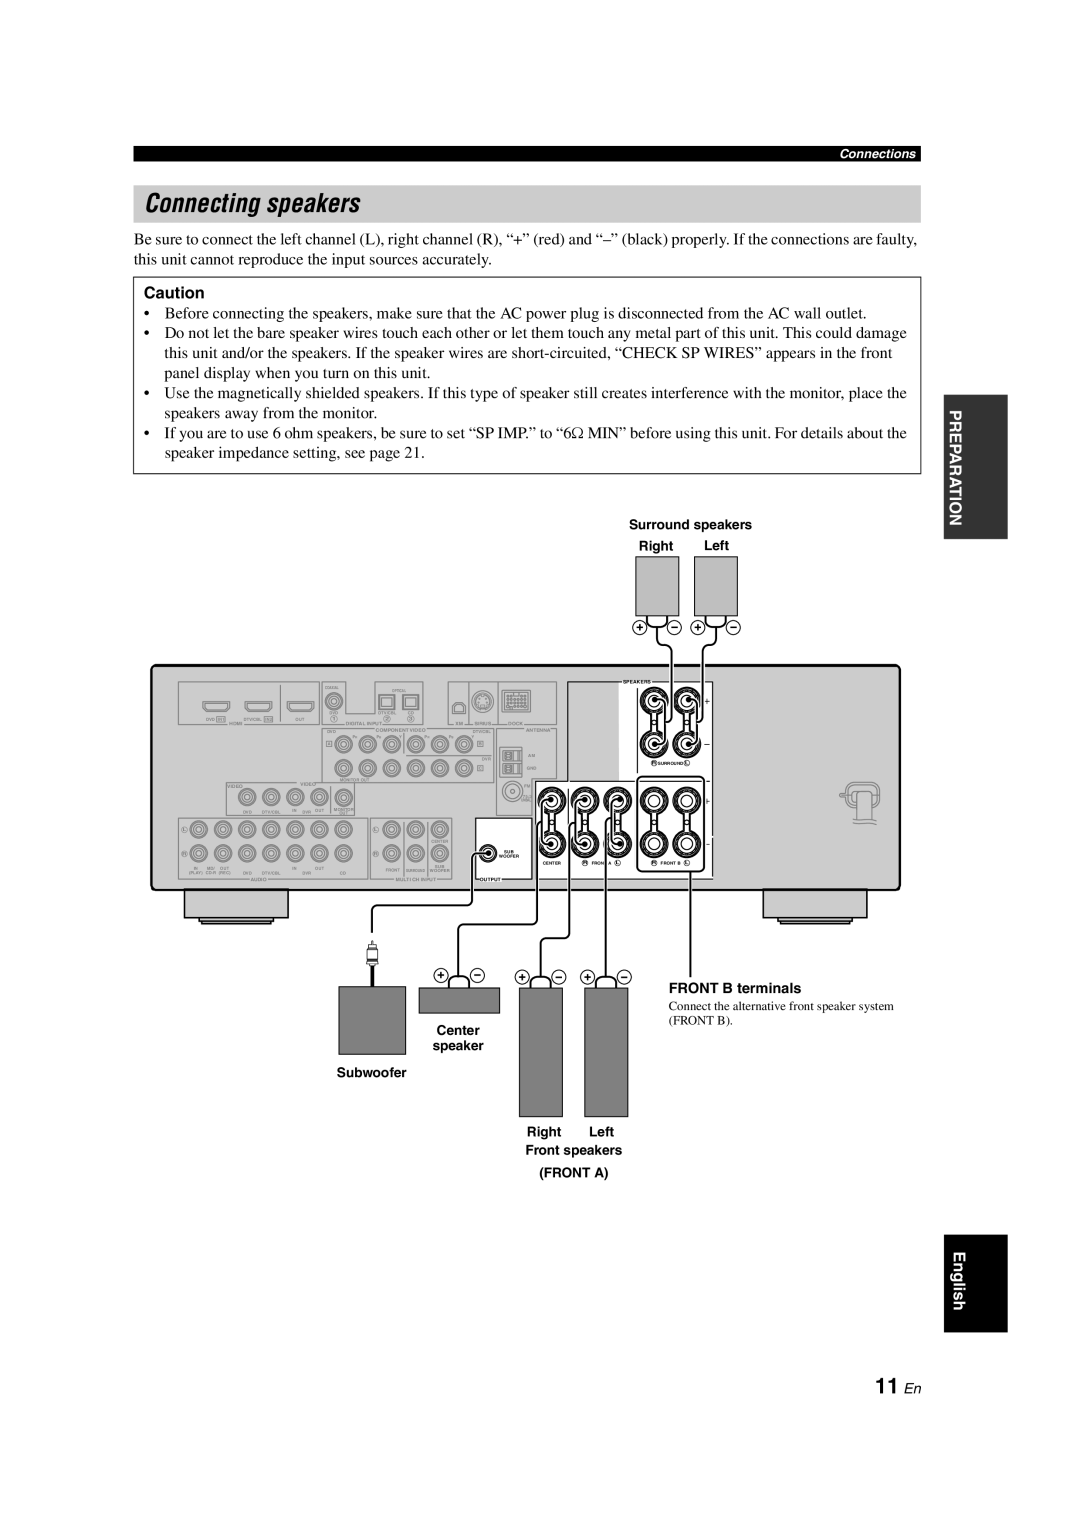 Yamaha RX-V463 owner manual Connecting speakers, 11 En 